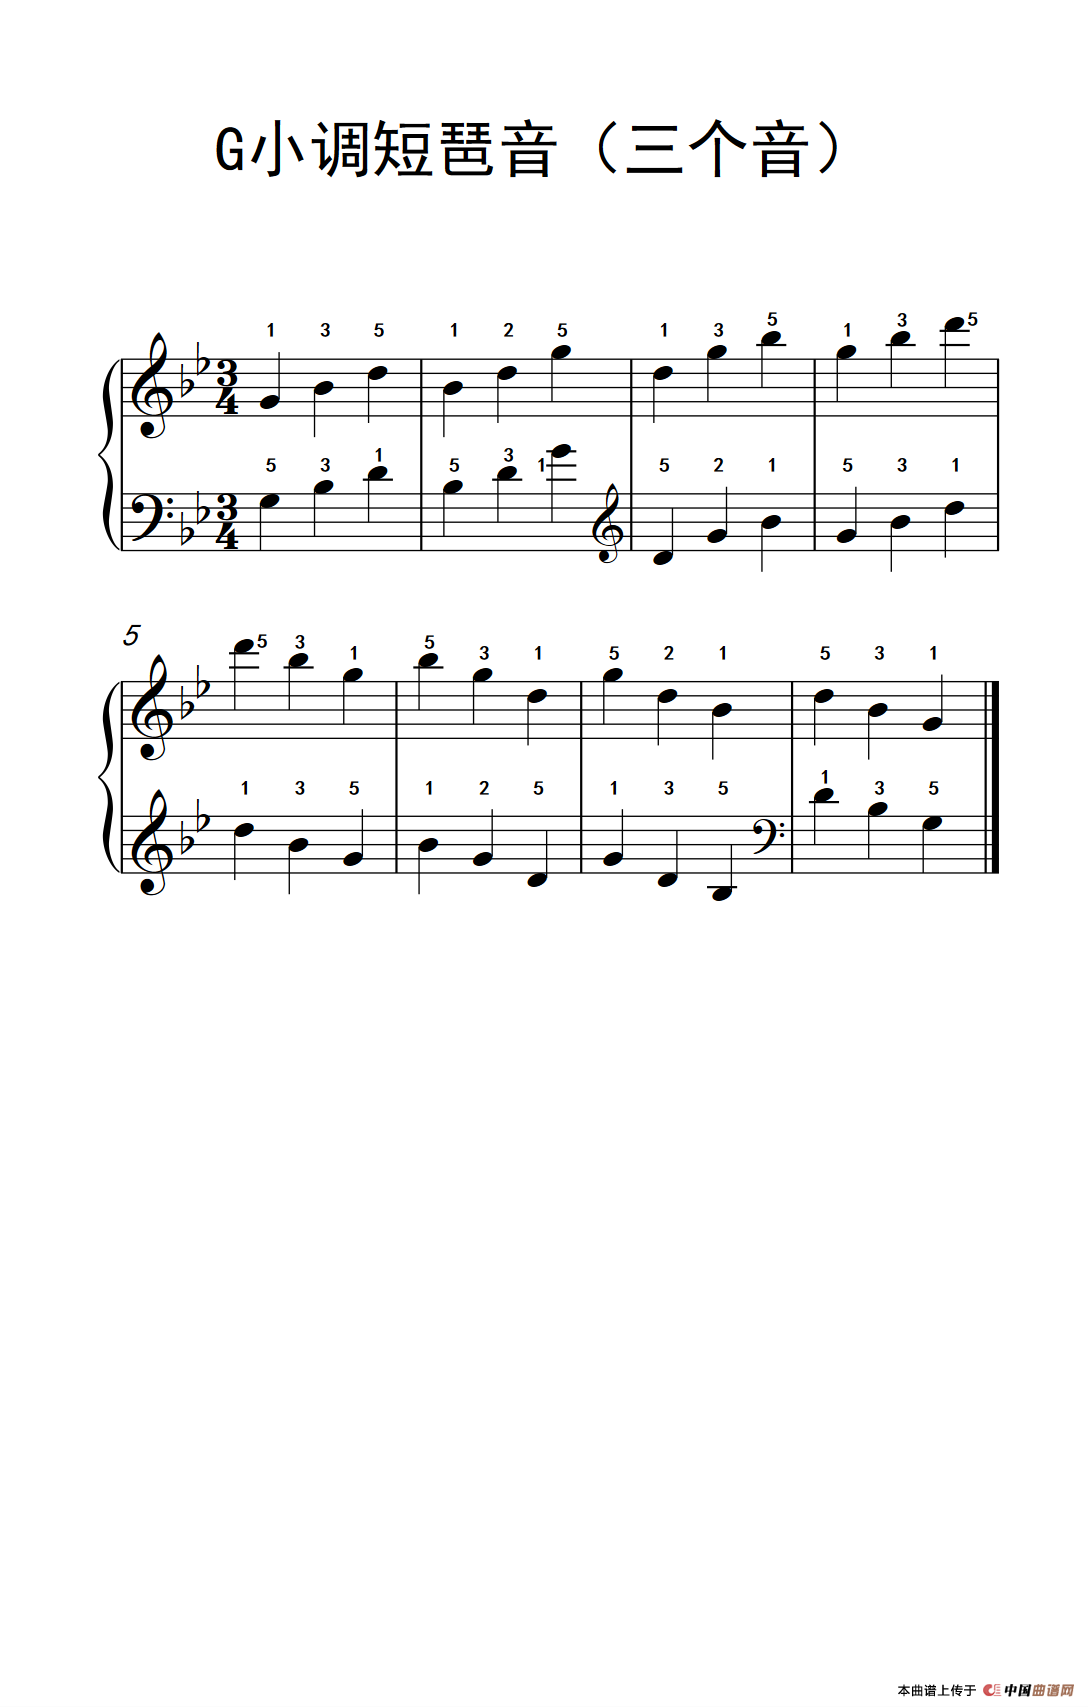 《G小调短琶音》钢琴曲谱图分享